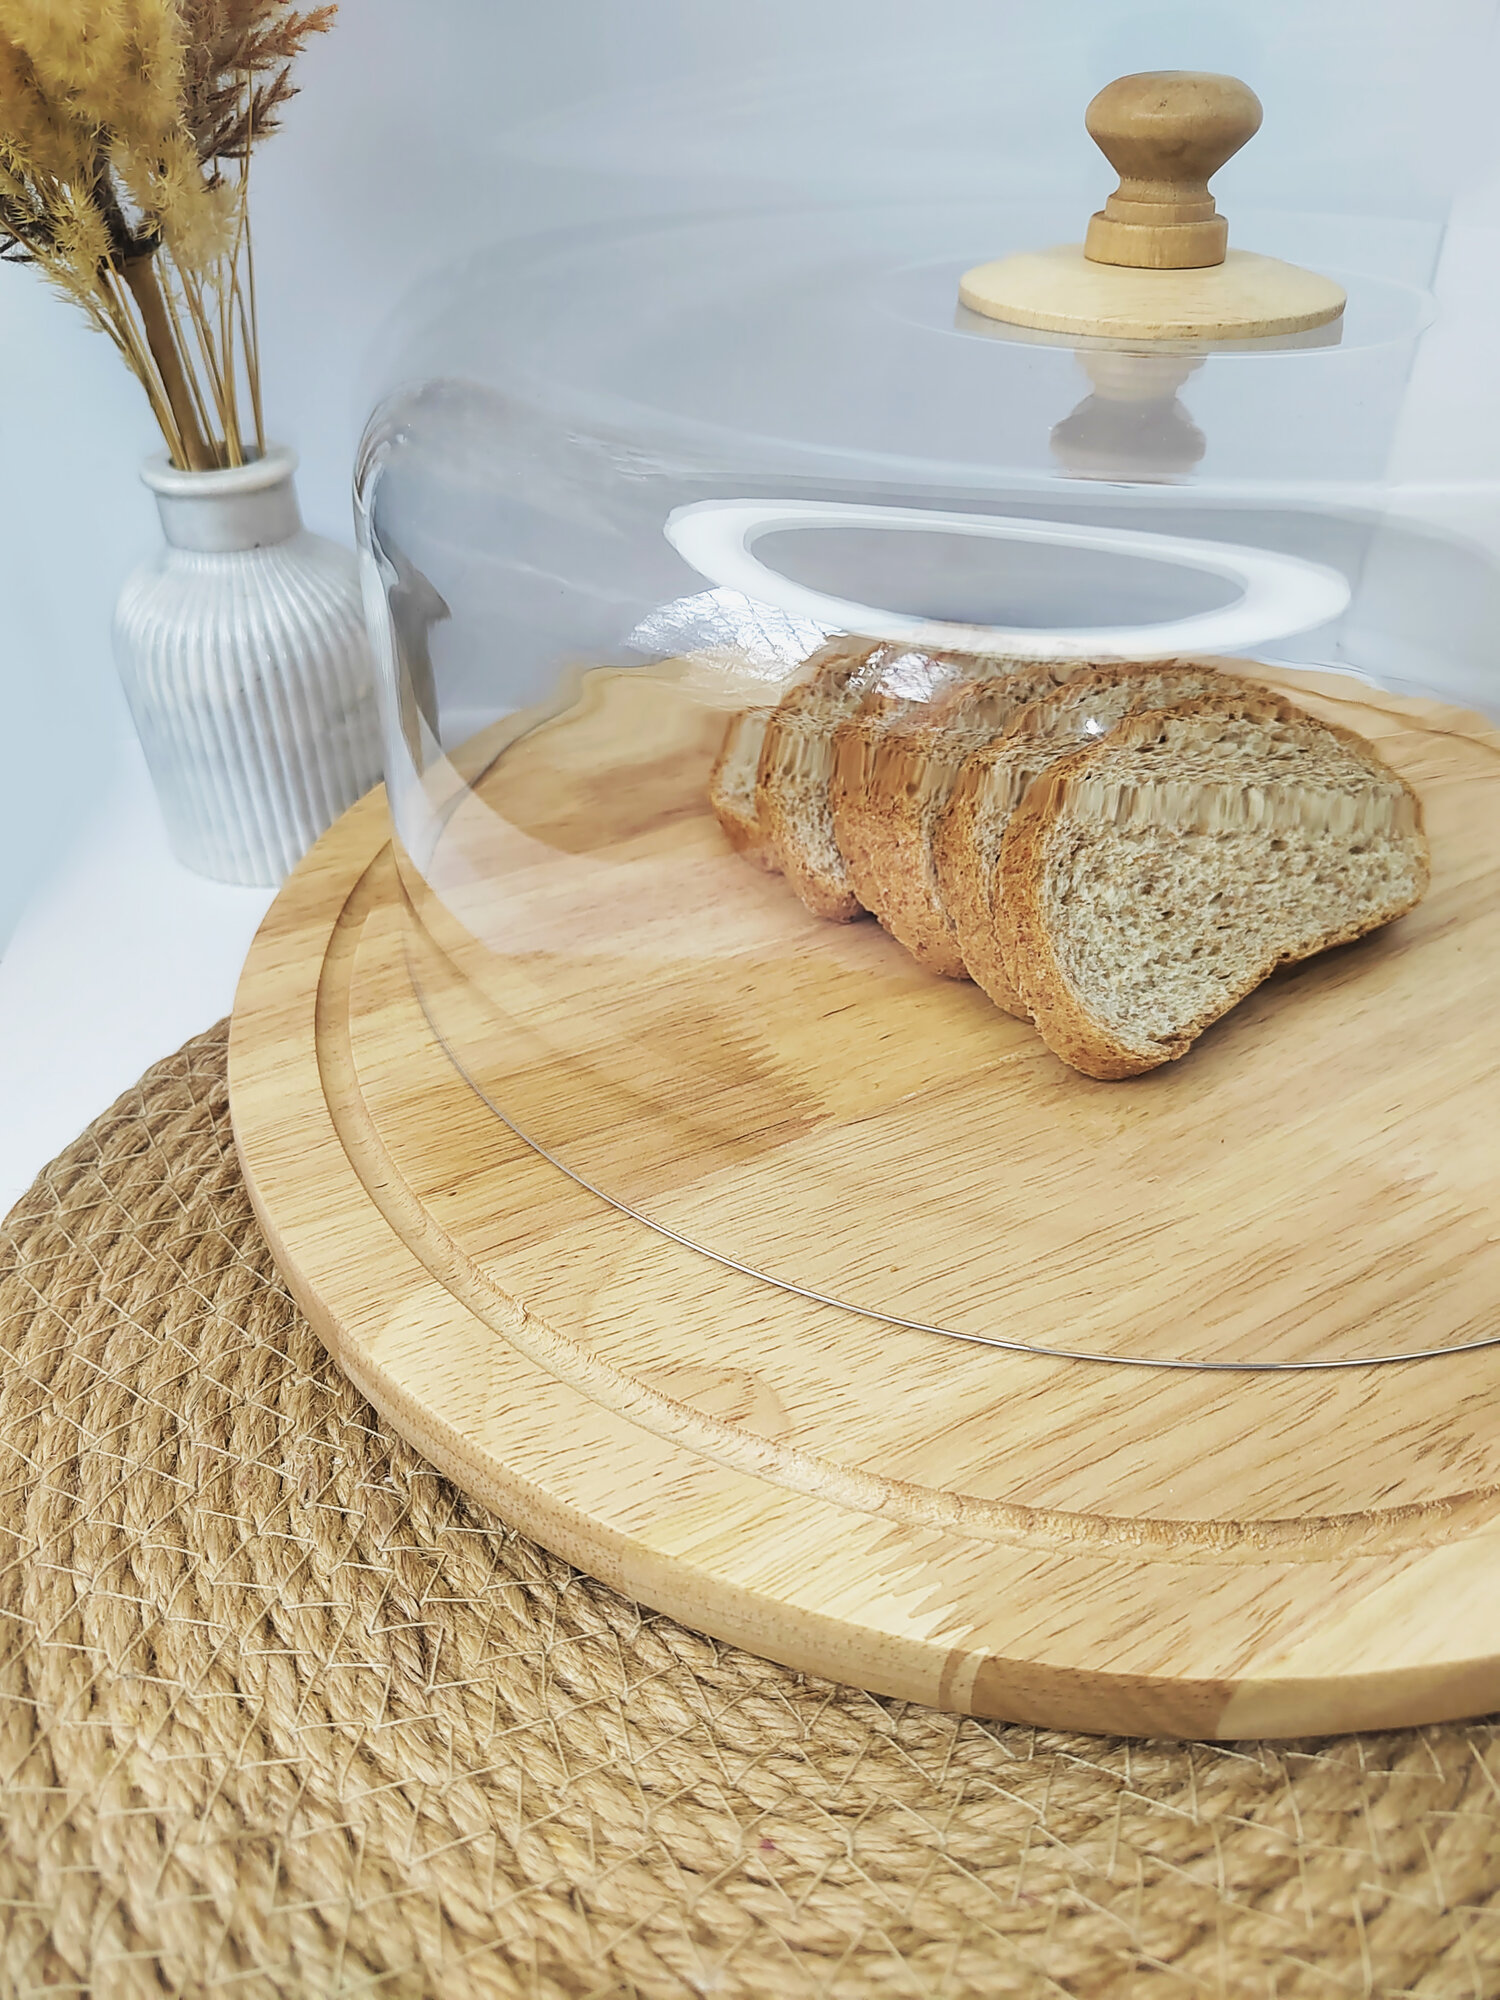 Хлебница деревянная с прозрачной крышкой